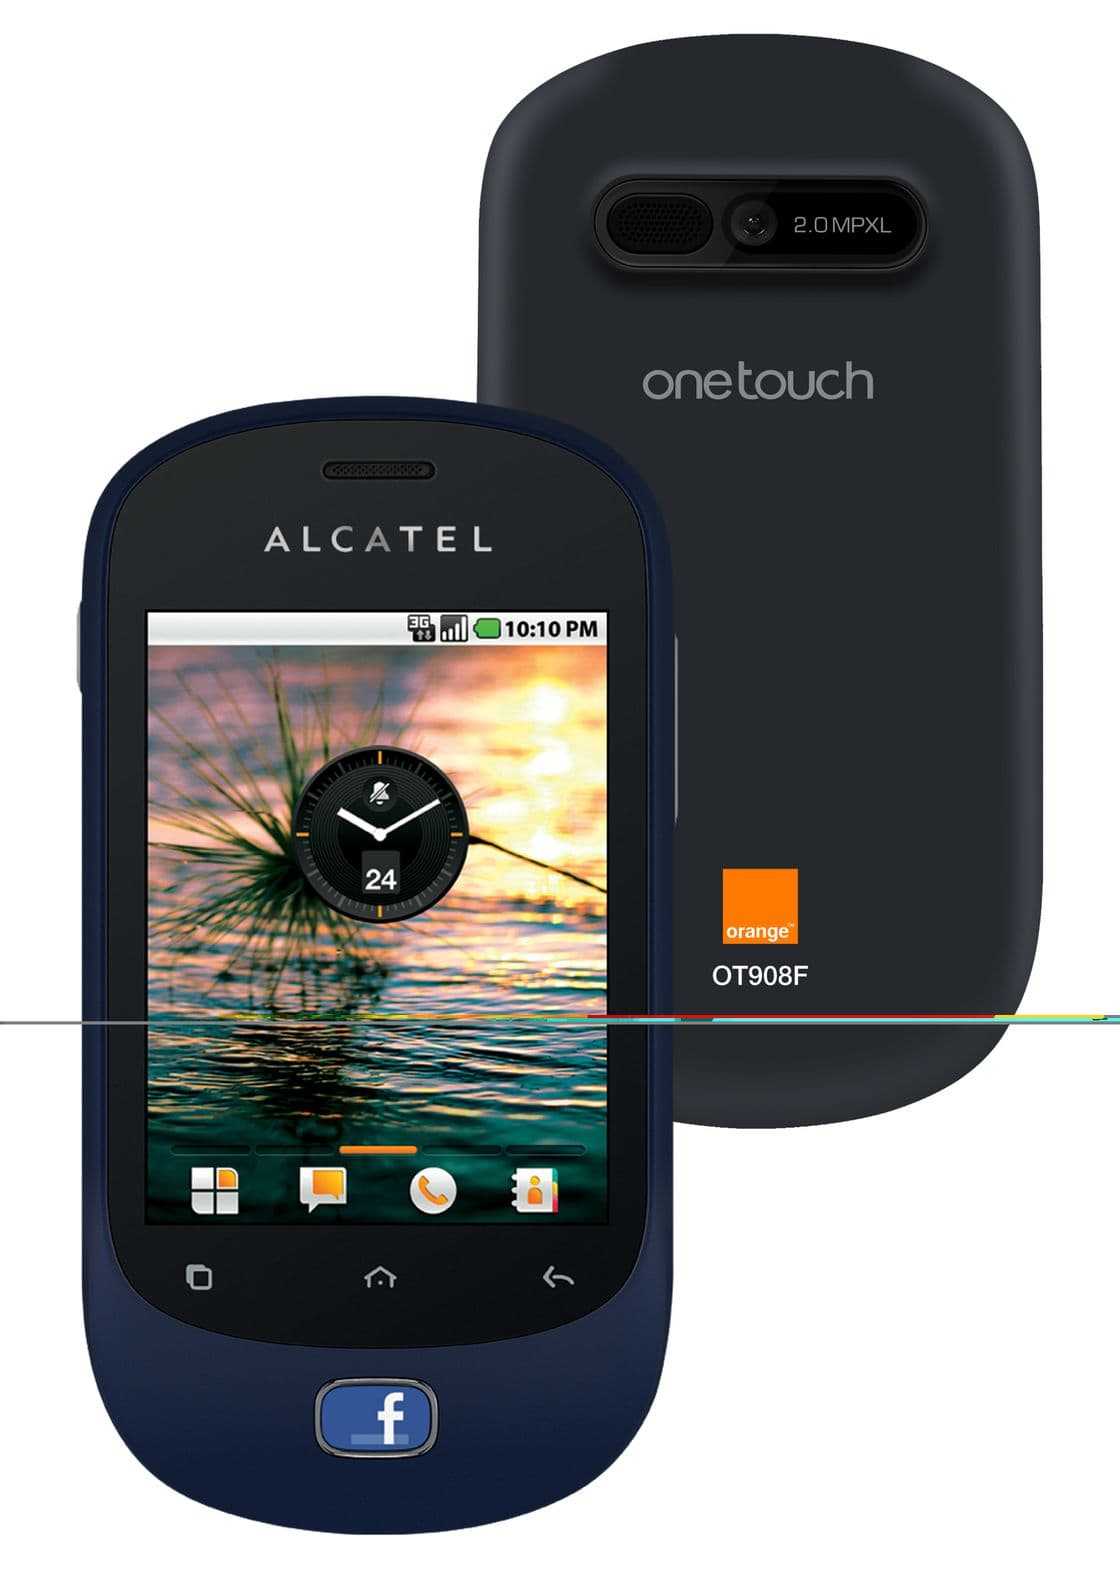 Alcatel one touch 602d (серый) - купить , скидки, цена, отзывы, обзор, характеристики - мобильные телефоны